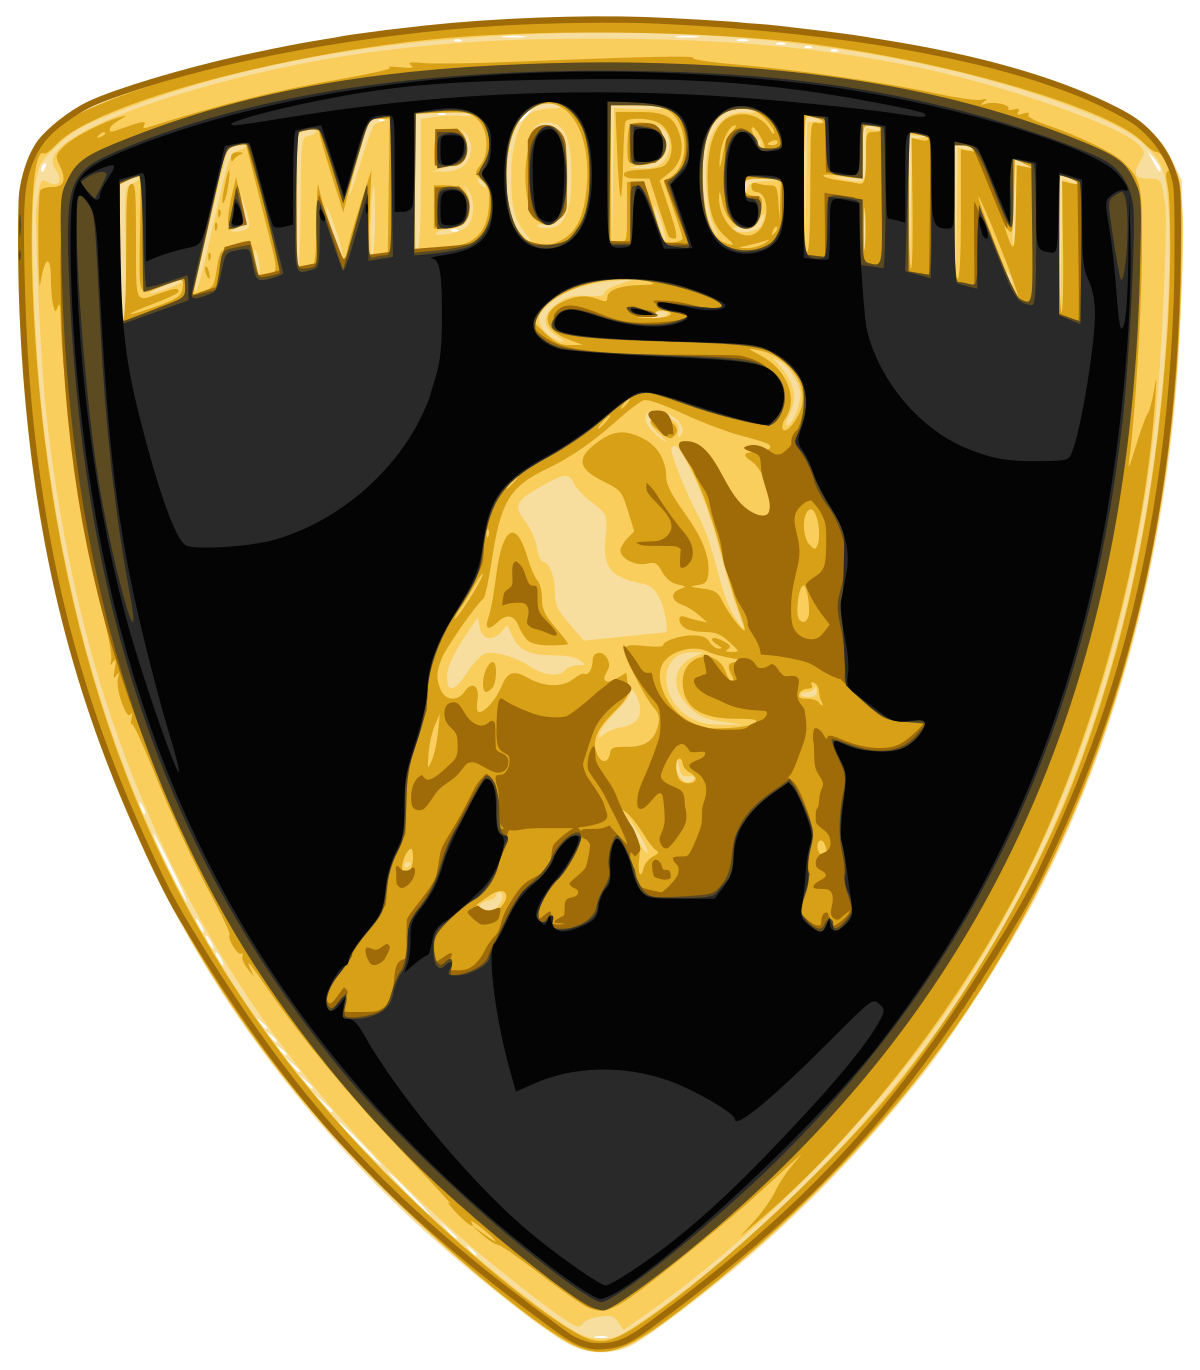 Lamborghini_Logo.svg.png